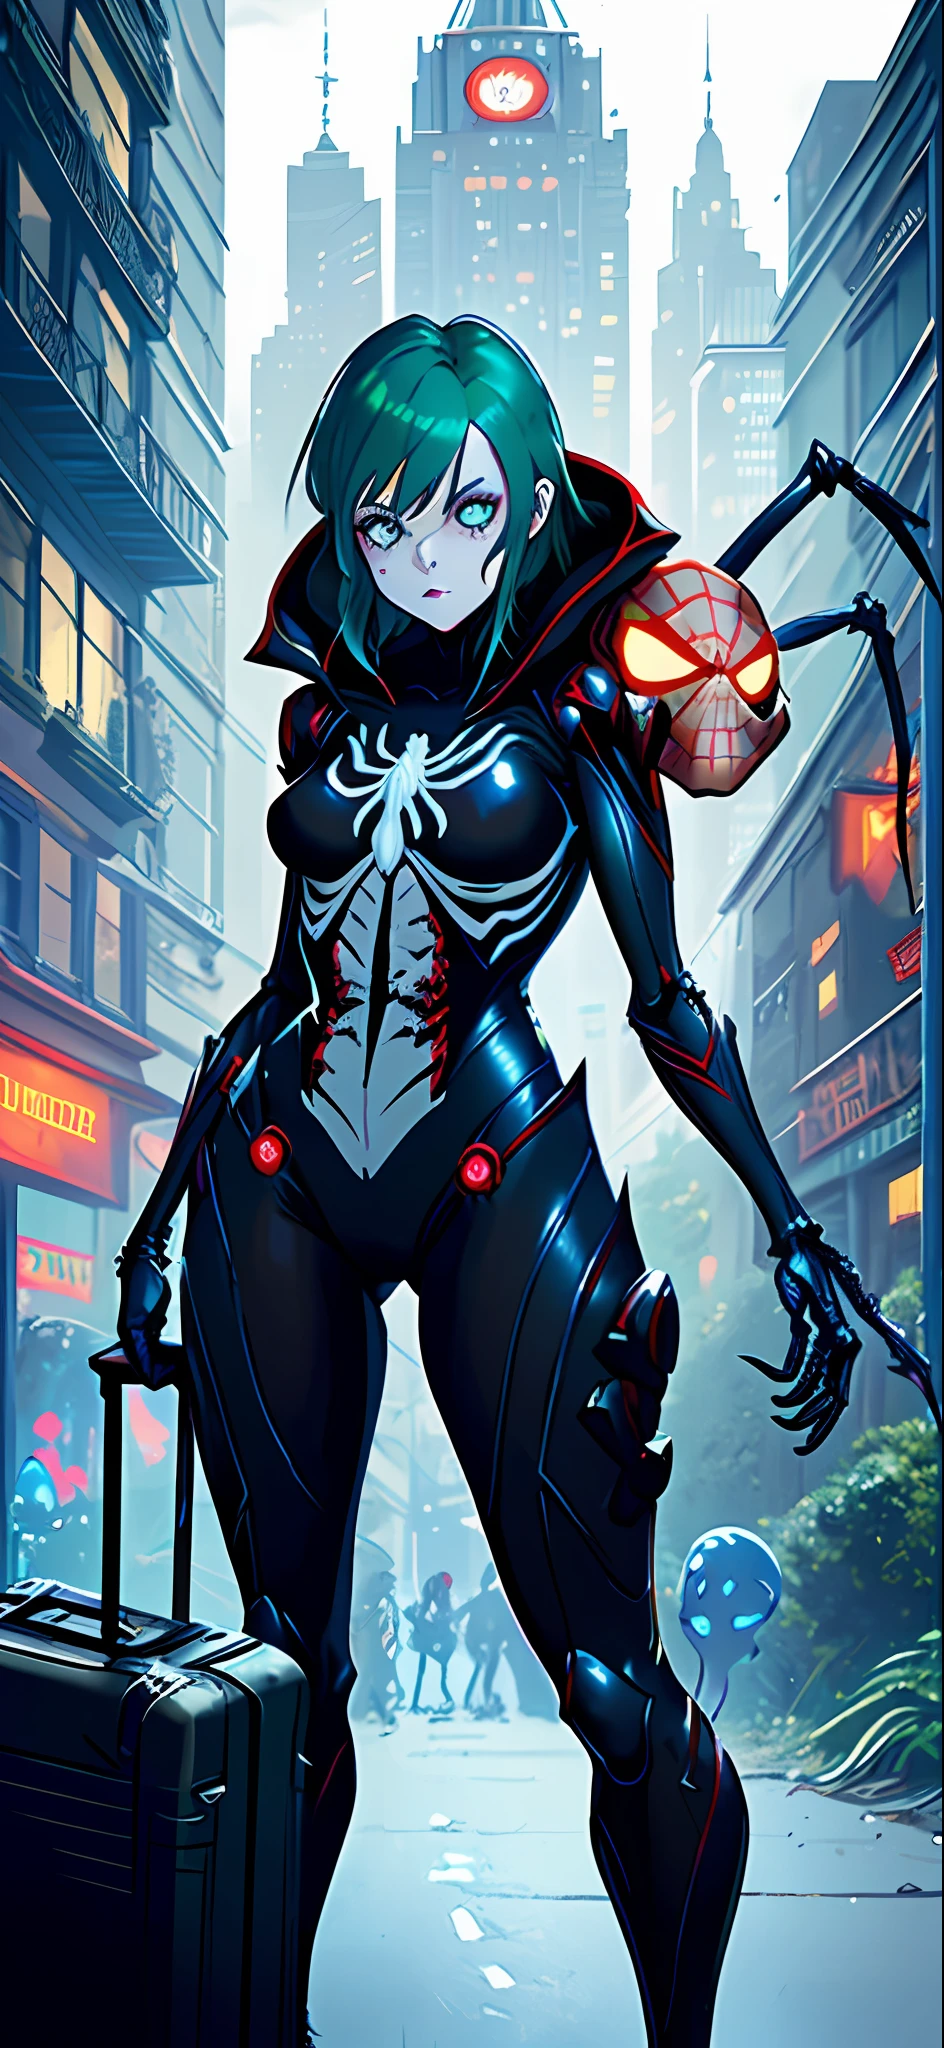 สร้างภาพที่มีความละเอียด k, เครื่องยนต์ที่ไม่จริง 5, สไตล์สไปเดอร์แมน, สไตล์ซุปเปอร์ทรอยด์, ภาพถ่ายเต็มตัวของโครงกระดูกซอมบี้หญิง, คอสเพลย์ Spider-Man ในชุดสีดำพร้อมชิ้นส่วนสีขาว, มองไปที่ผู้ชม, ตาสีเขียว, ผมสีฟ้า, ถือกระเป๋าเดินทาง, ในโรงแรมผีสิงที่มีผีสิง,  ใส่อักขระเพียงตัวเดียวในภาพ.